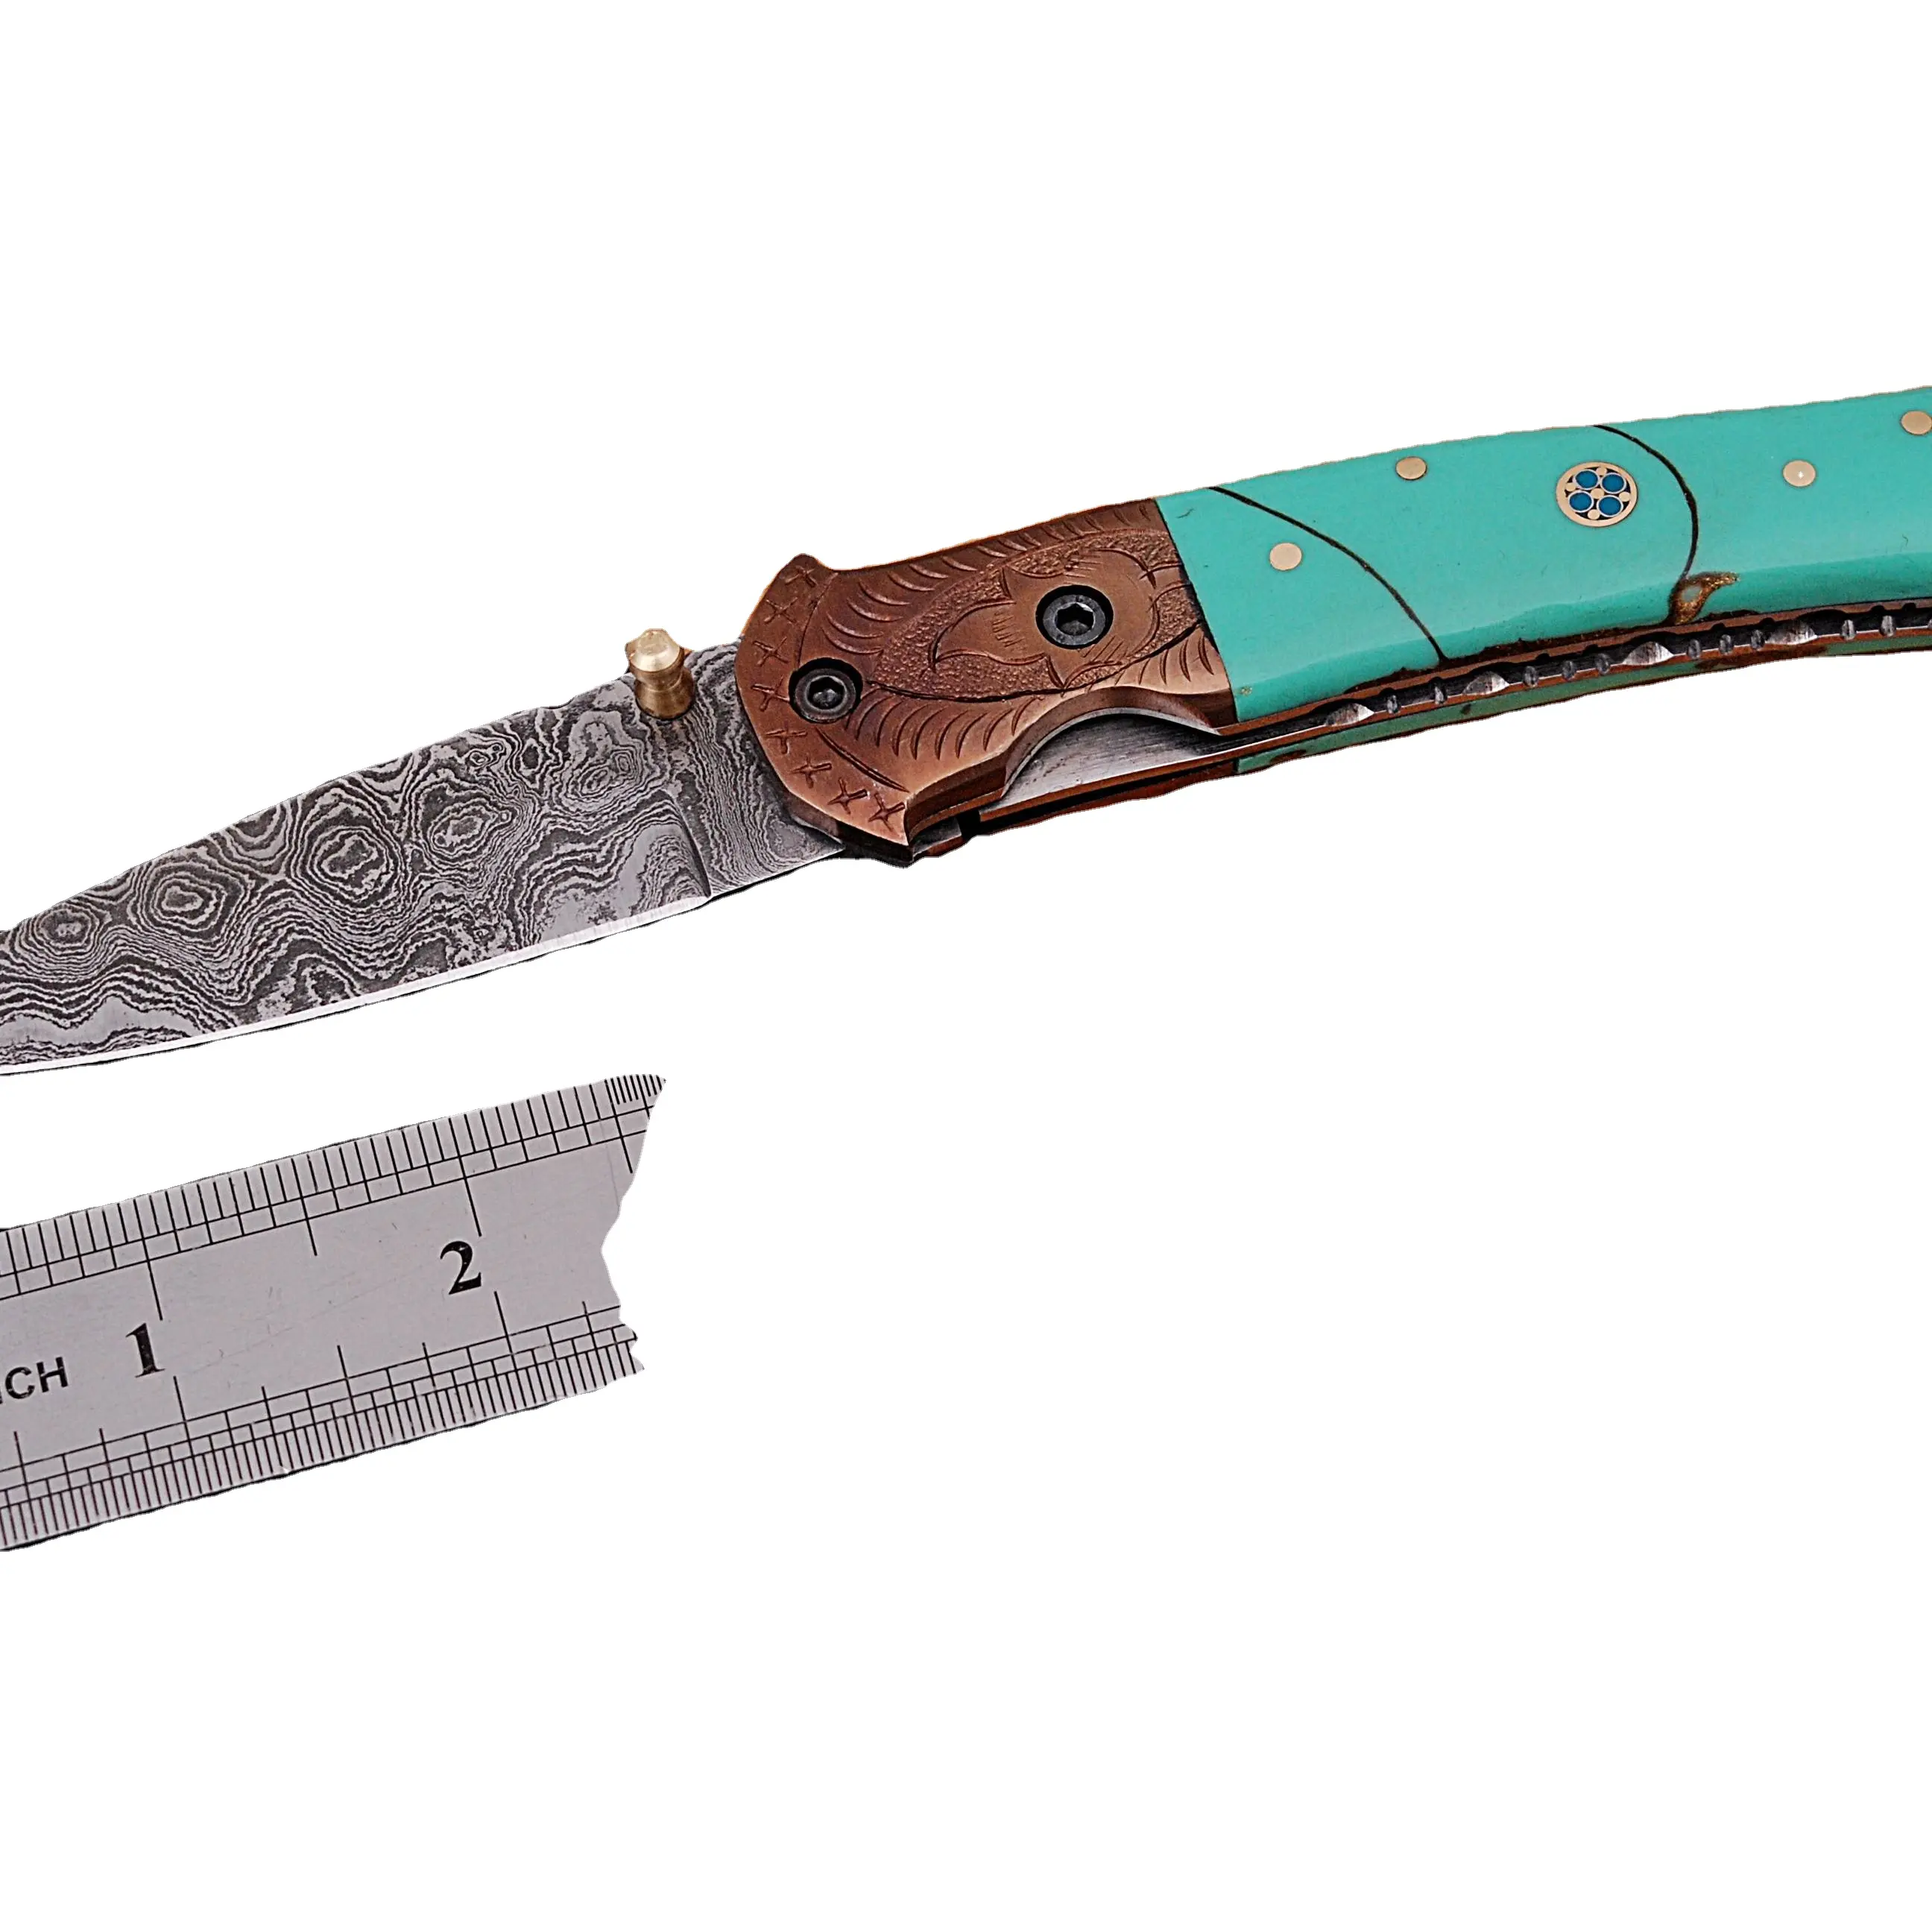 سكينة جيب Unitqe عالية الجودة متعددة الوظائف, سكينة جيب متعددة الوظائف للبيع بالجملة ، بسعر منخفض ، سكين قابلة للطي ، مقبض من الراتنج الصلب الدمشقي